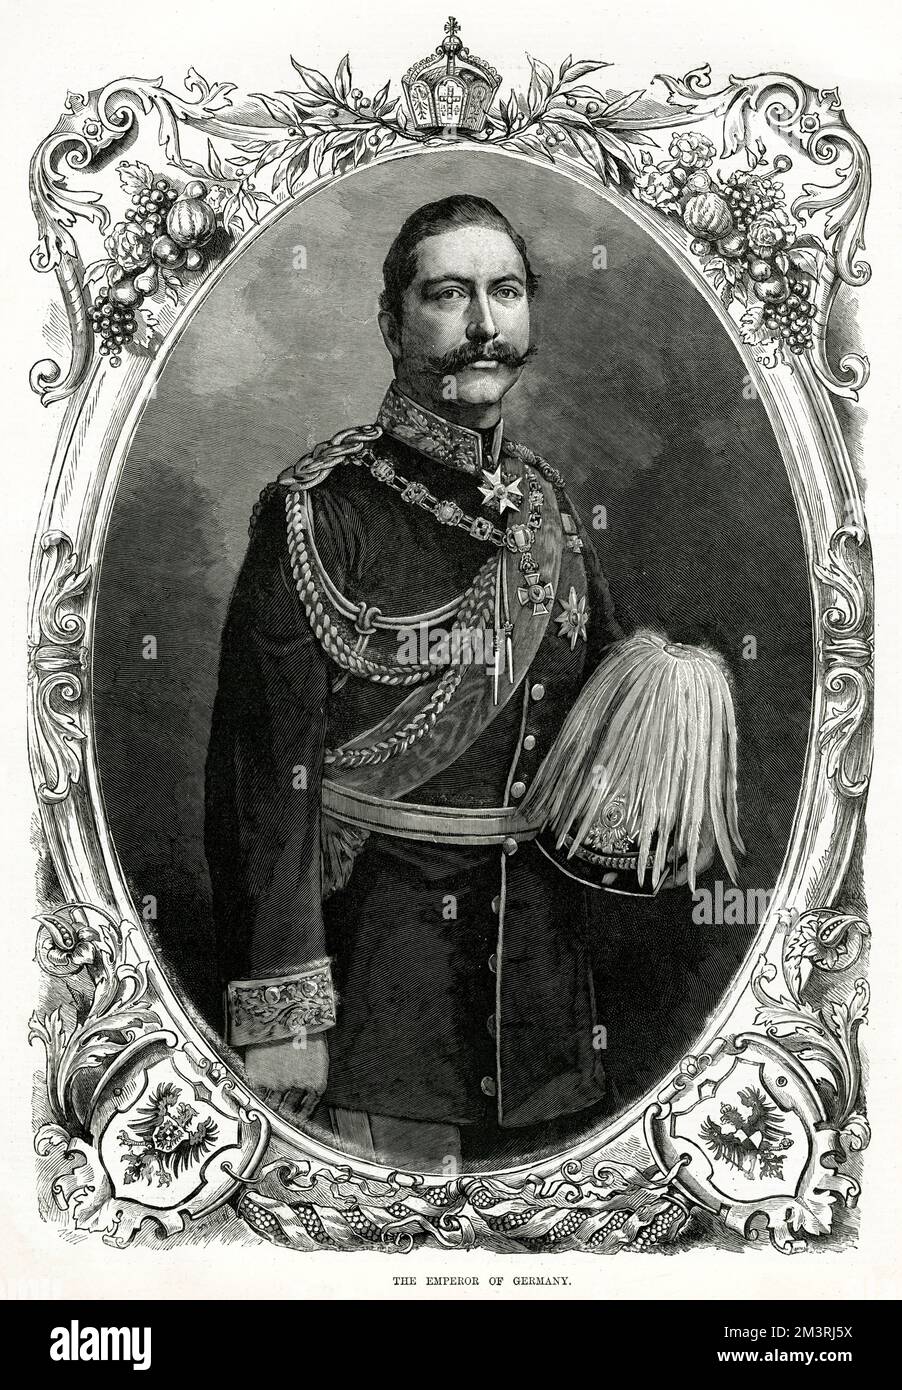 Wilhelm II oder Wilhelm II (1859 1941), letzter deutscher Kaiser und König von Preußen, der vom 15. Juni 1888 bis 9. November 1918 das Deutsche Reich und das Königreich Preußen regierte. Datum: 1888 Stockfoto